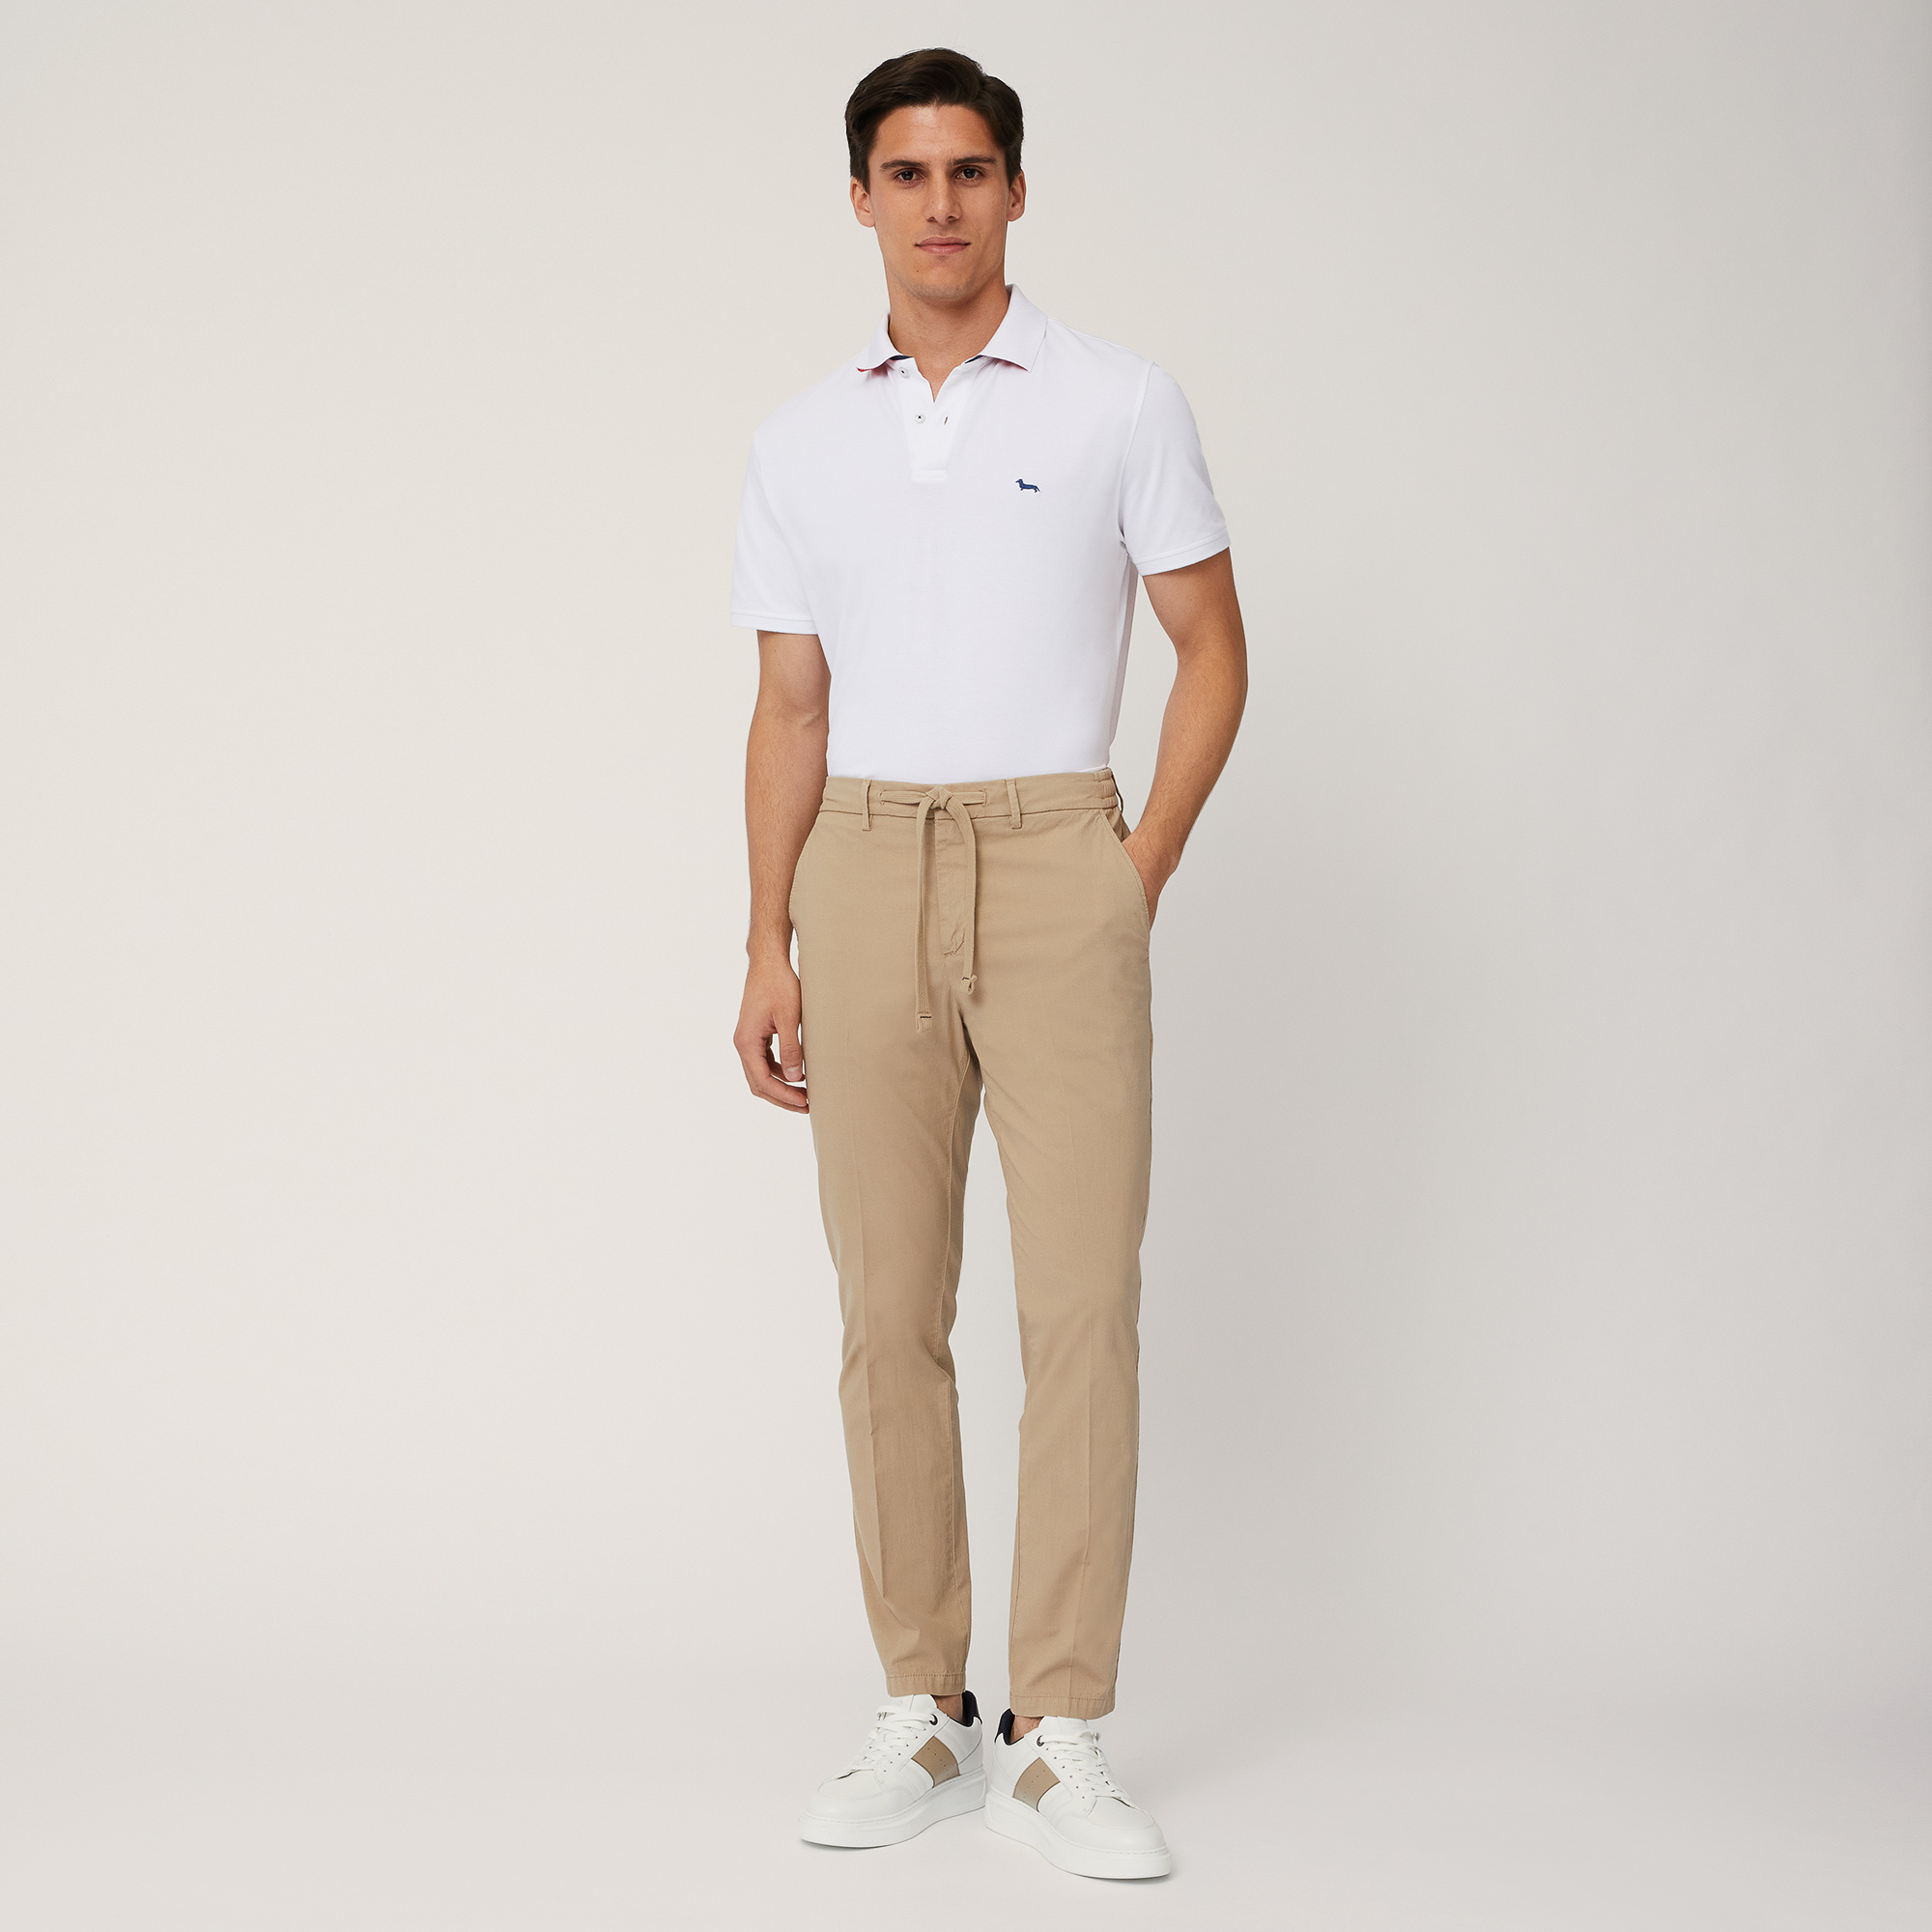 Cotton-Blend Jogging Pants, Beige, large image number 3